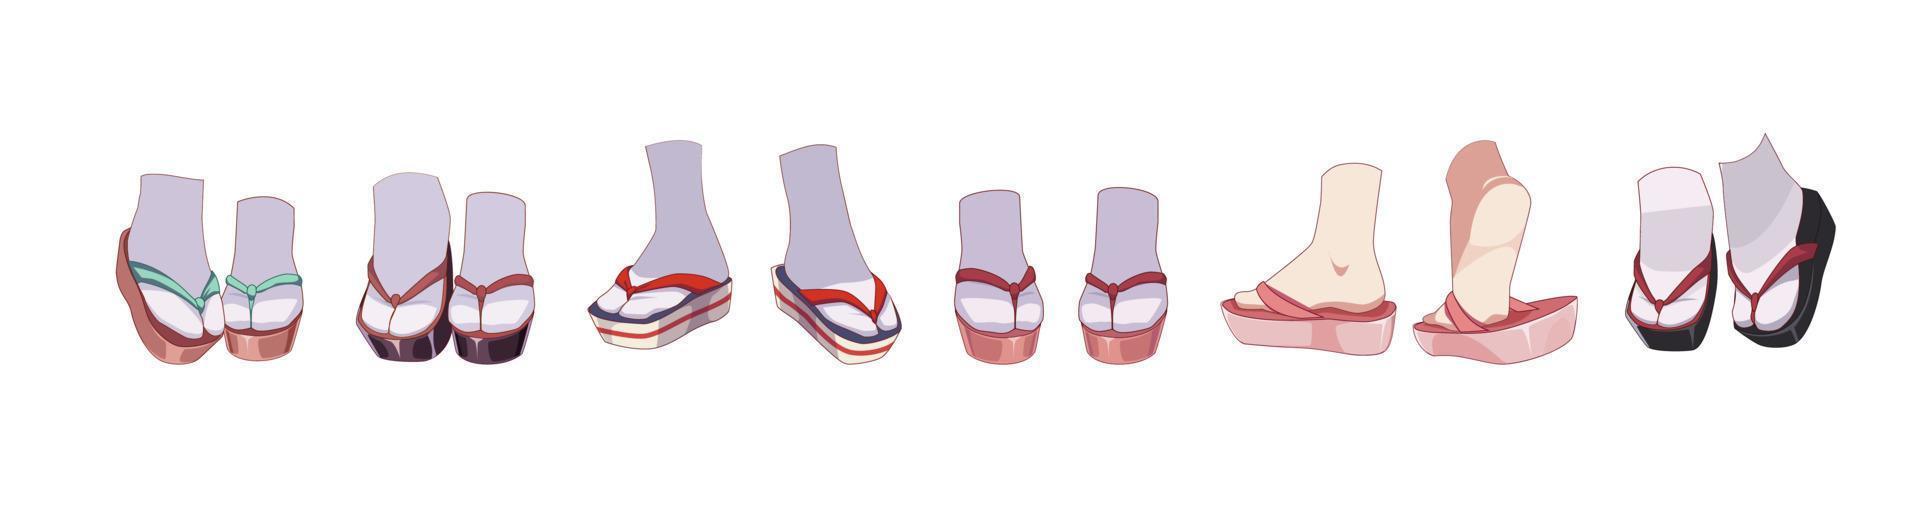 Japanse schoenen - geta, zori. sandalen voor meisje kimono traditioneel kostuum. set van voeten in sokken. vector illustratie